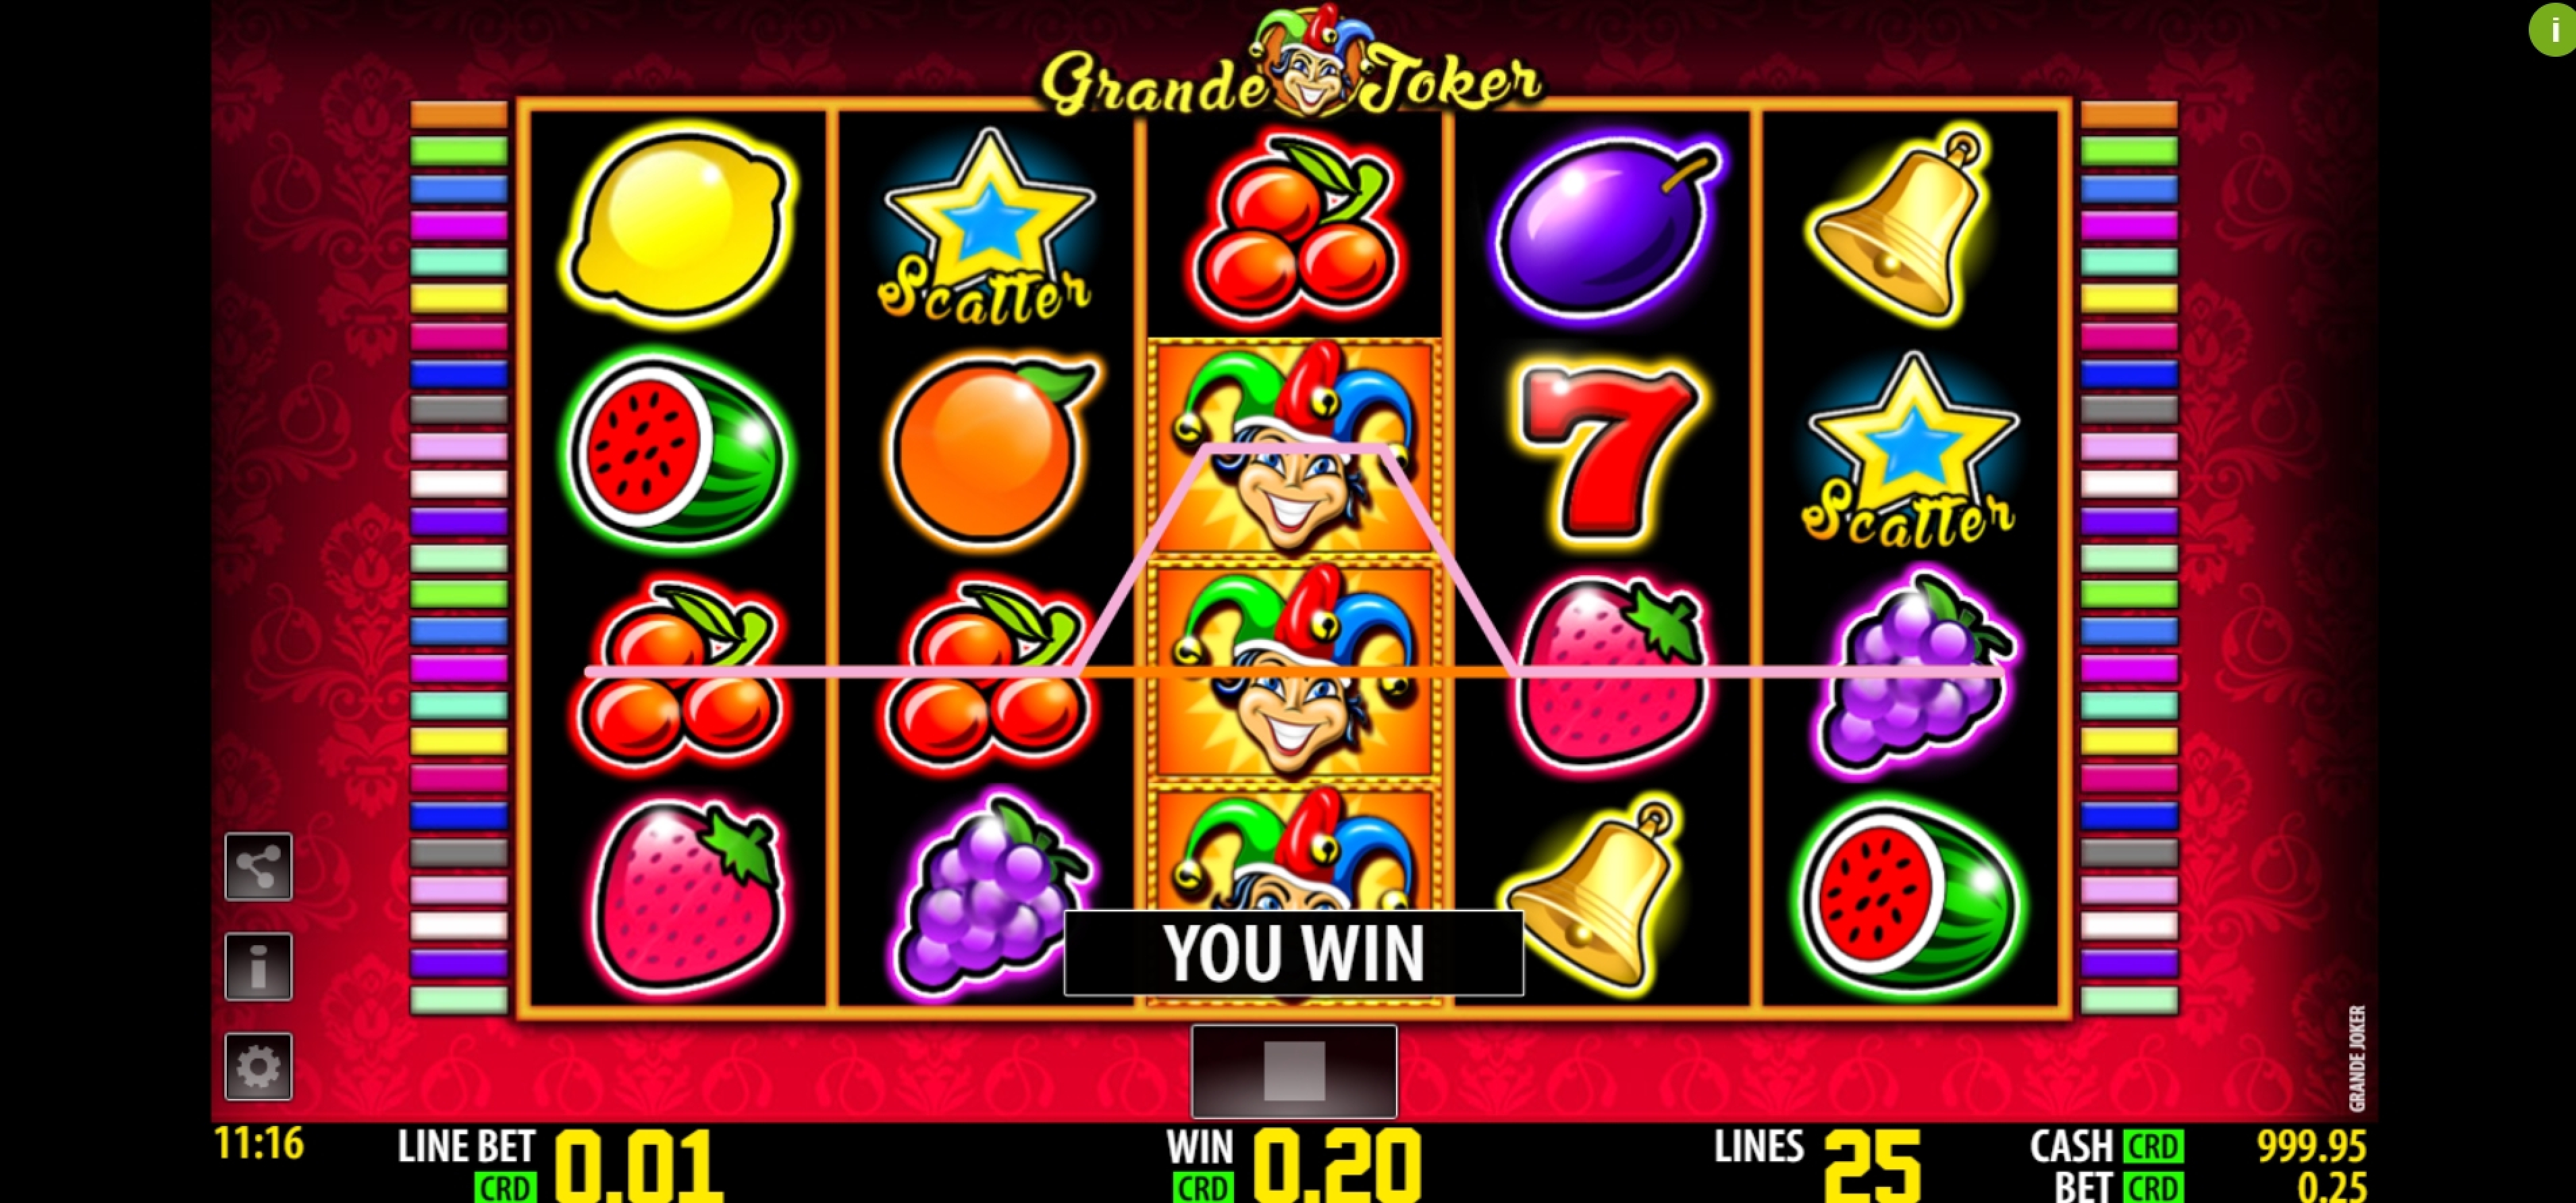 Win Money in Grande Joker Free Slot Game by Nazionale Elettronica